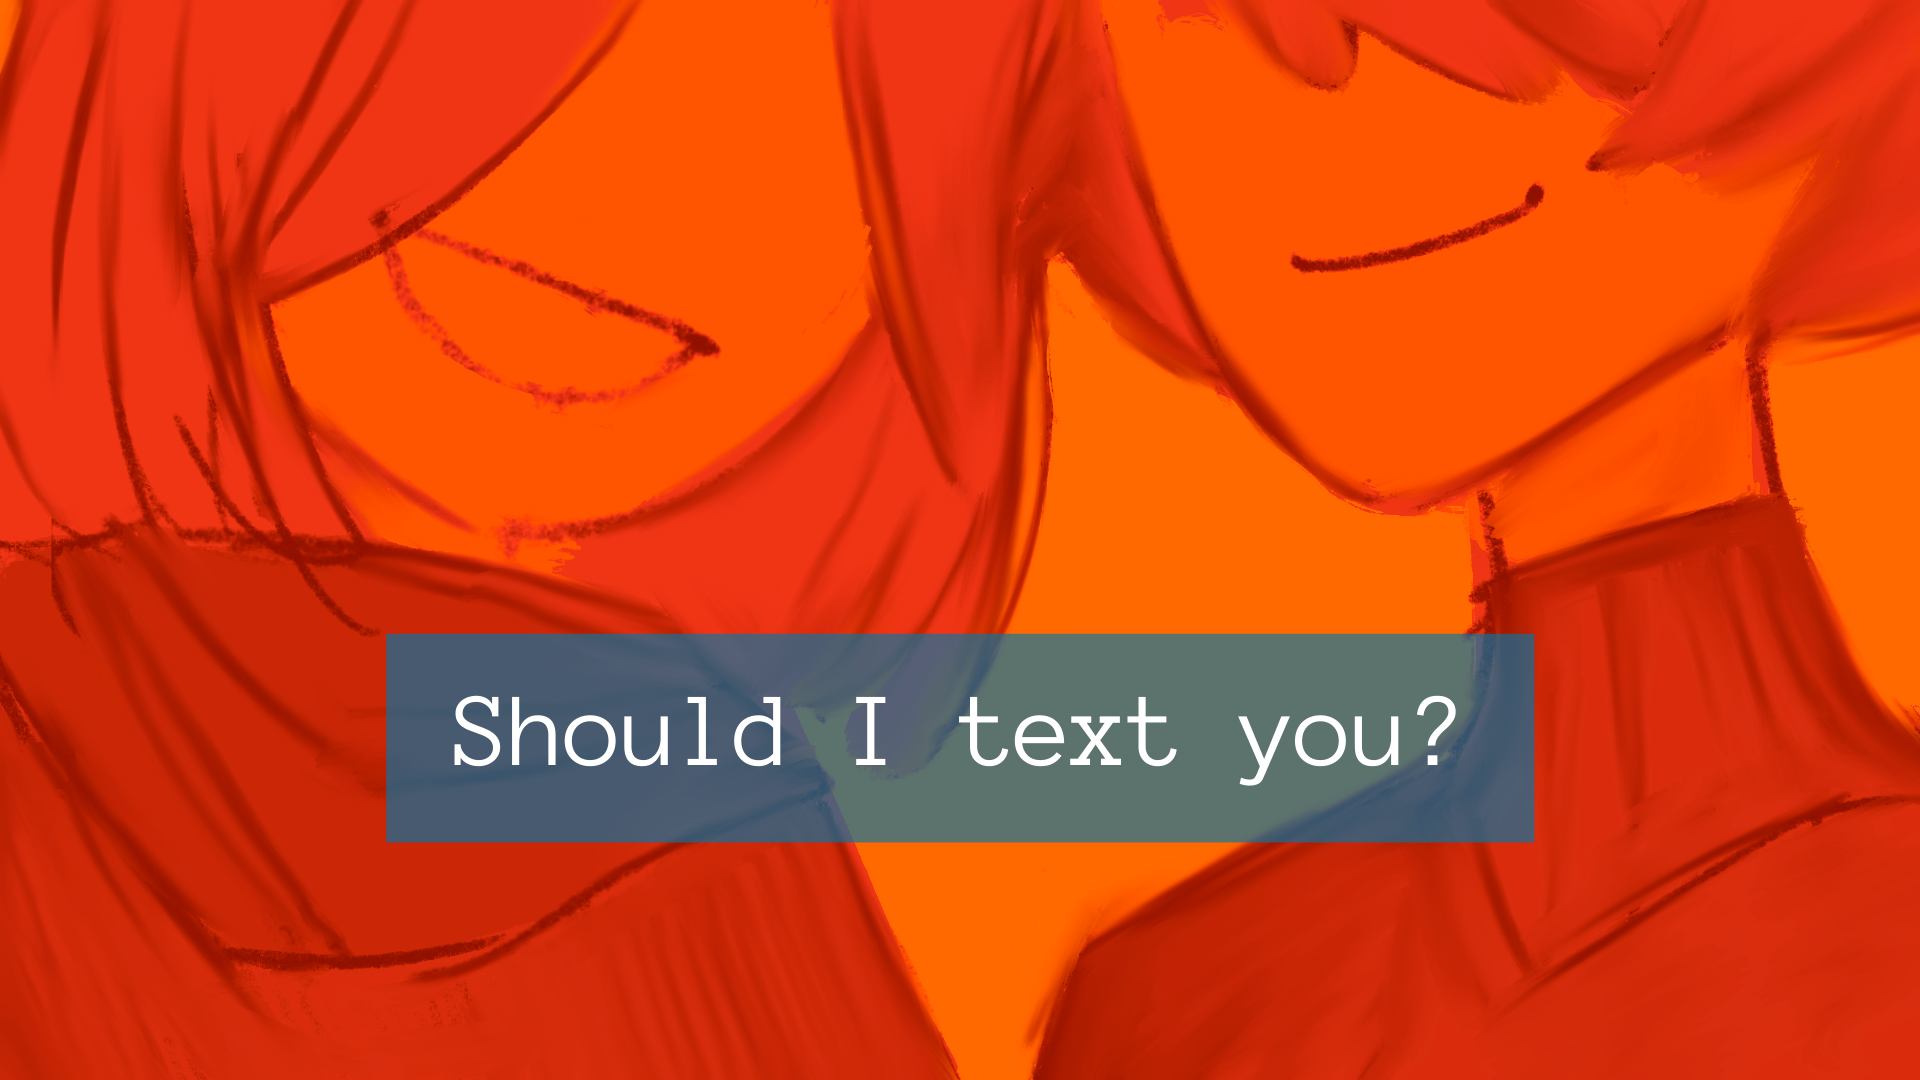 Should I text you?